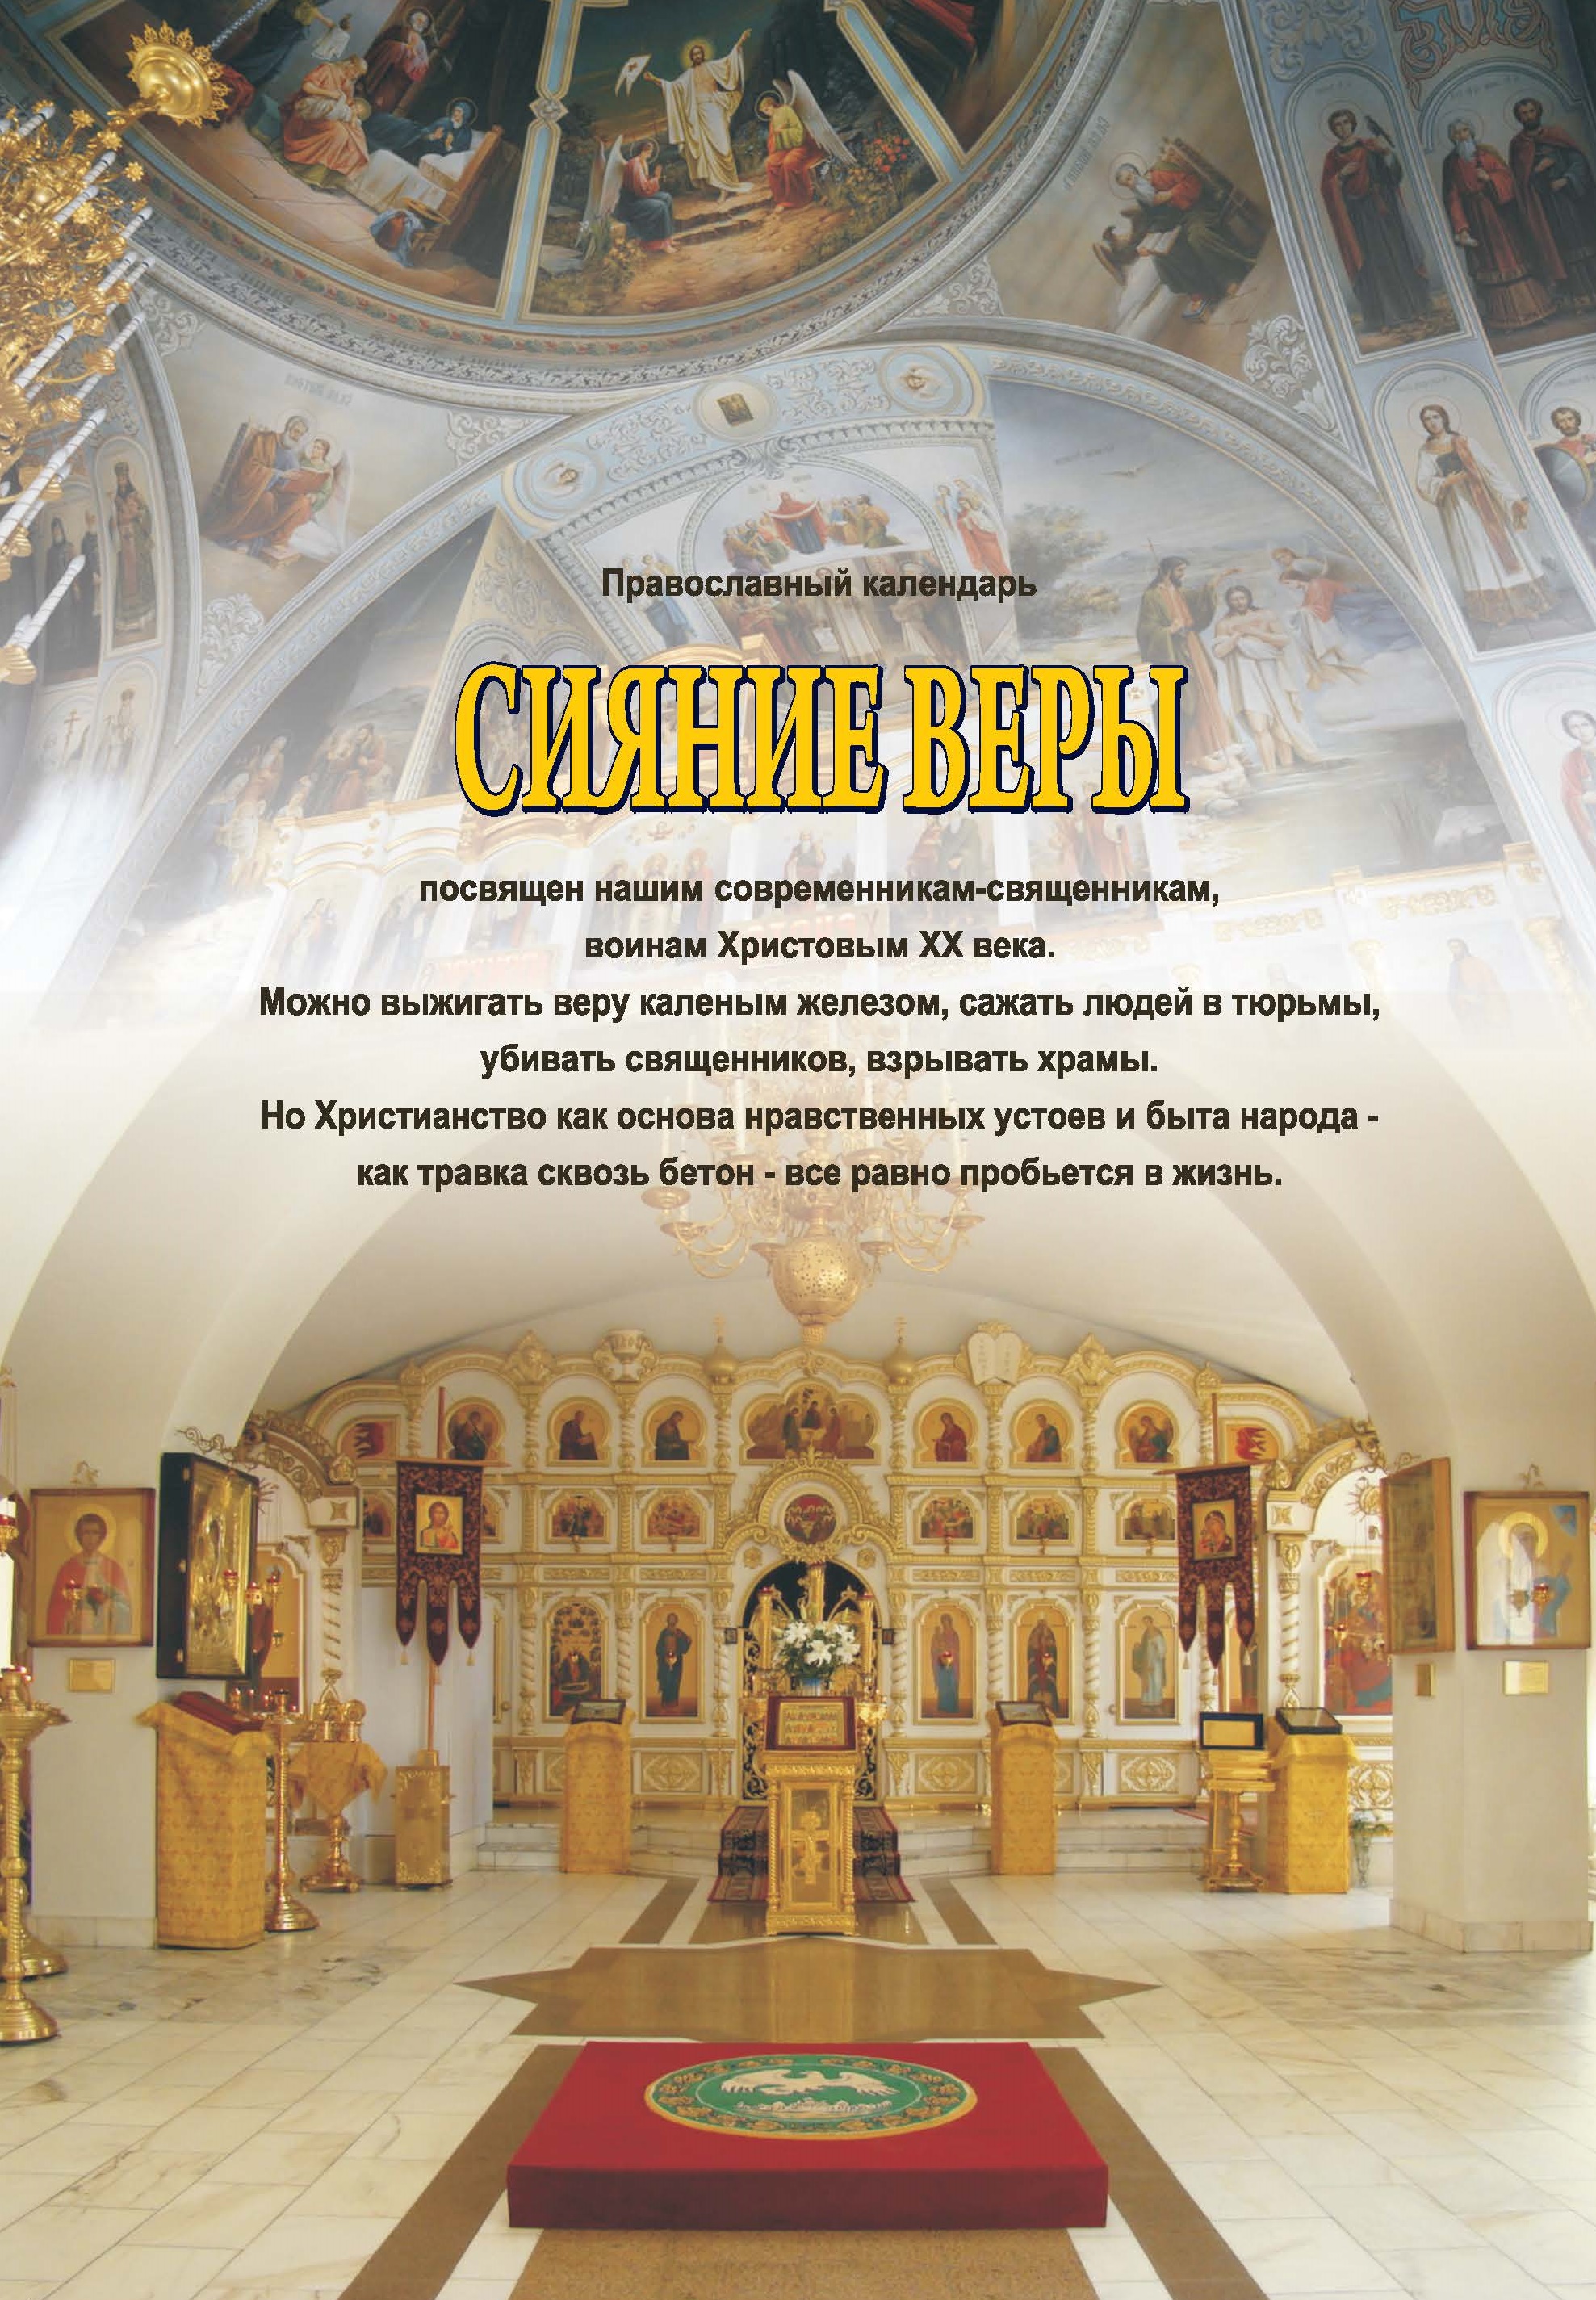 Православный календарь на 2024 год «Сияние веры»